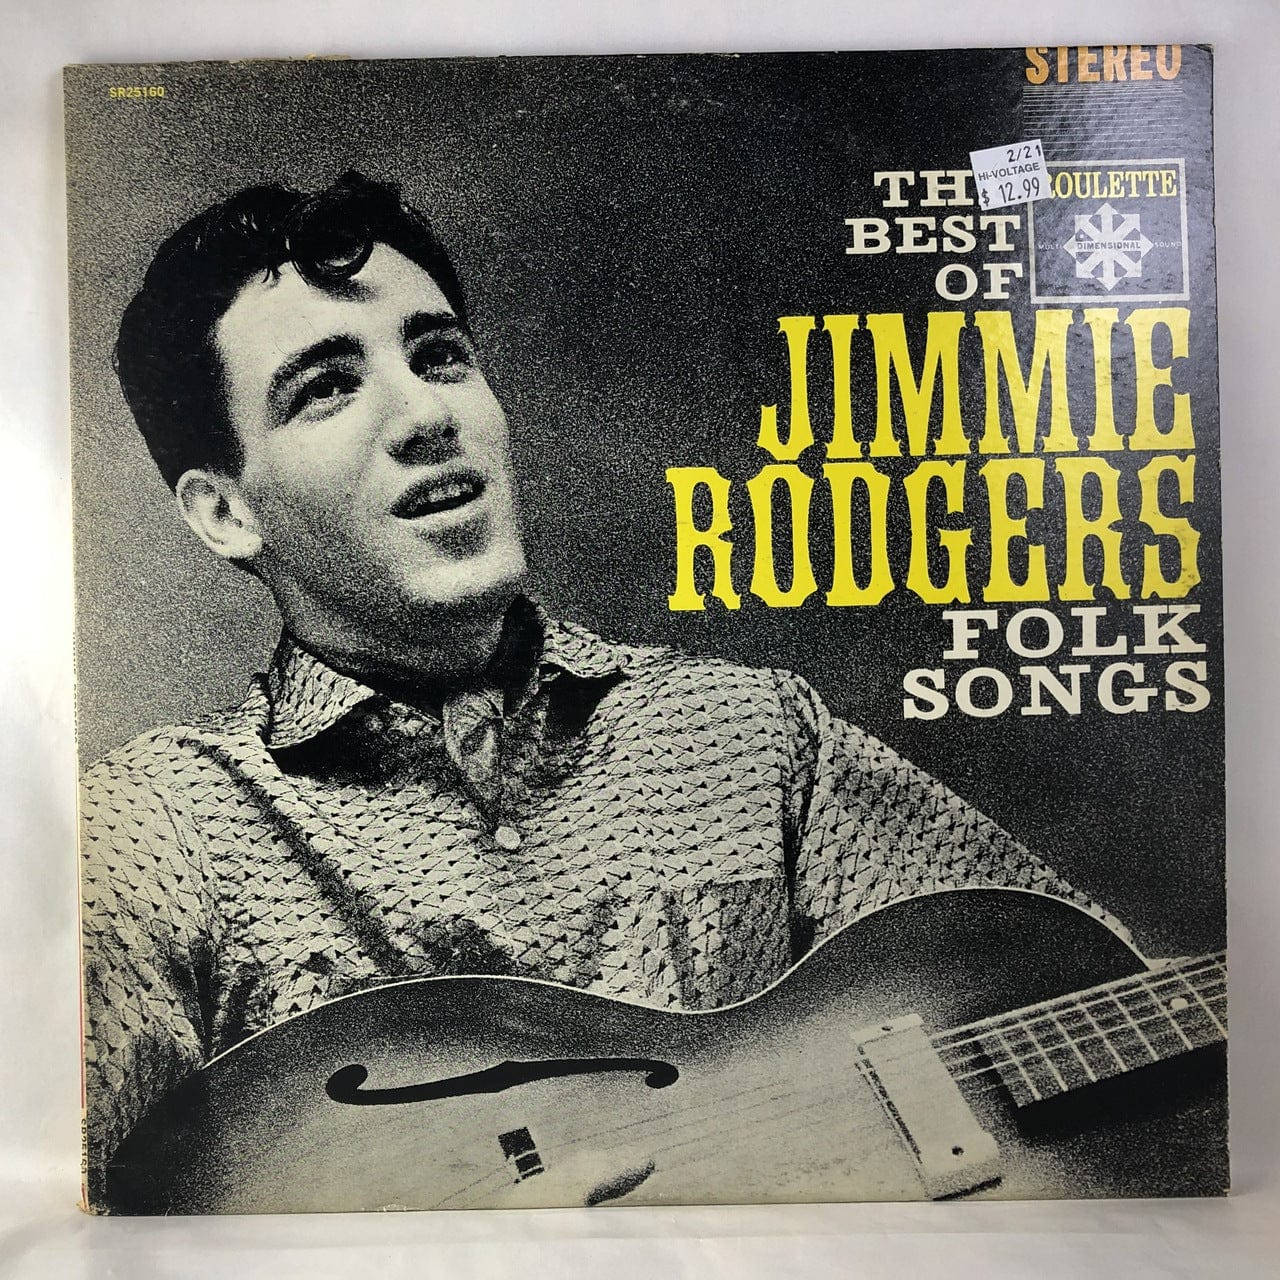 Dasbeste Von Jimmie Rodgers Album Cover Wallpaper